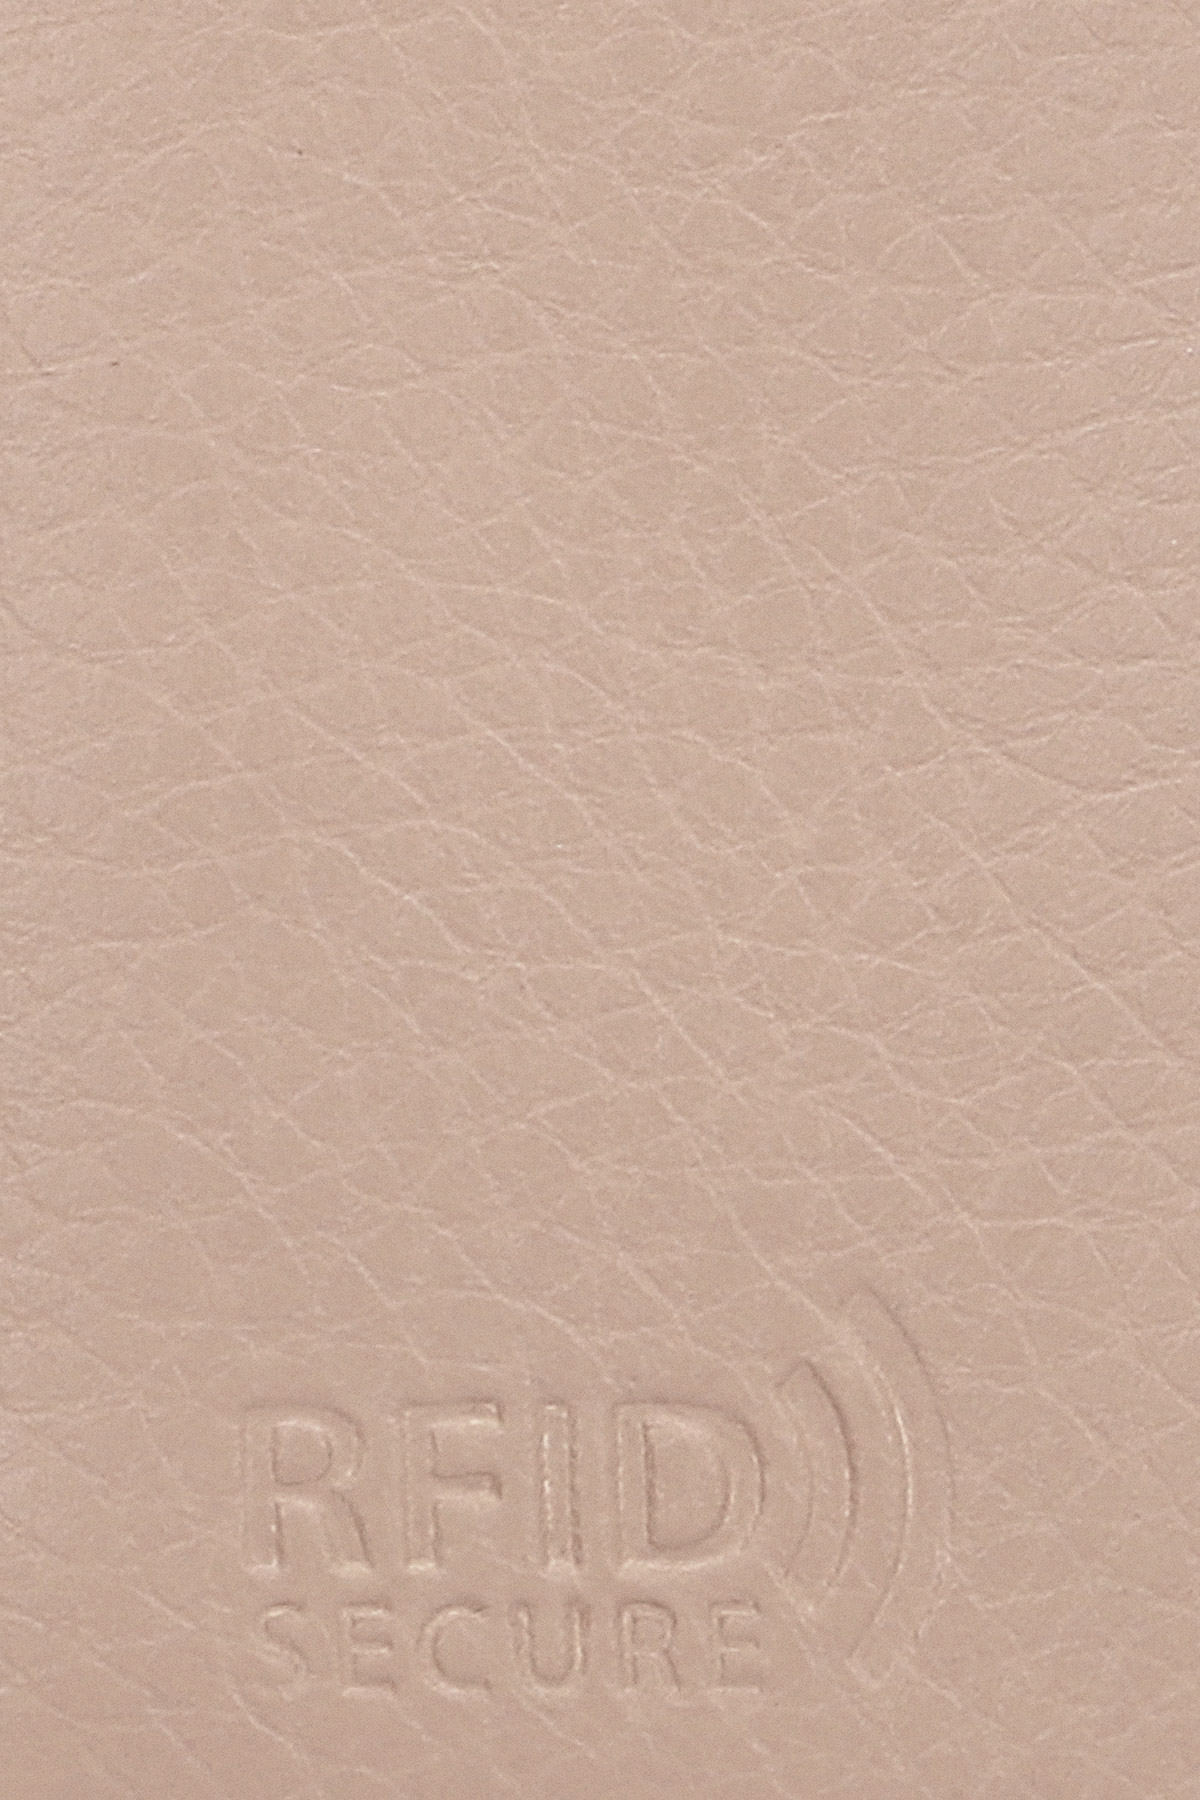 Kolorowy portfel damski z grafiką zapinany na suwak /P044 S096